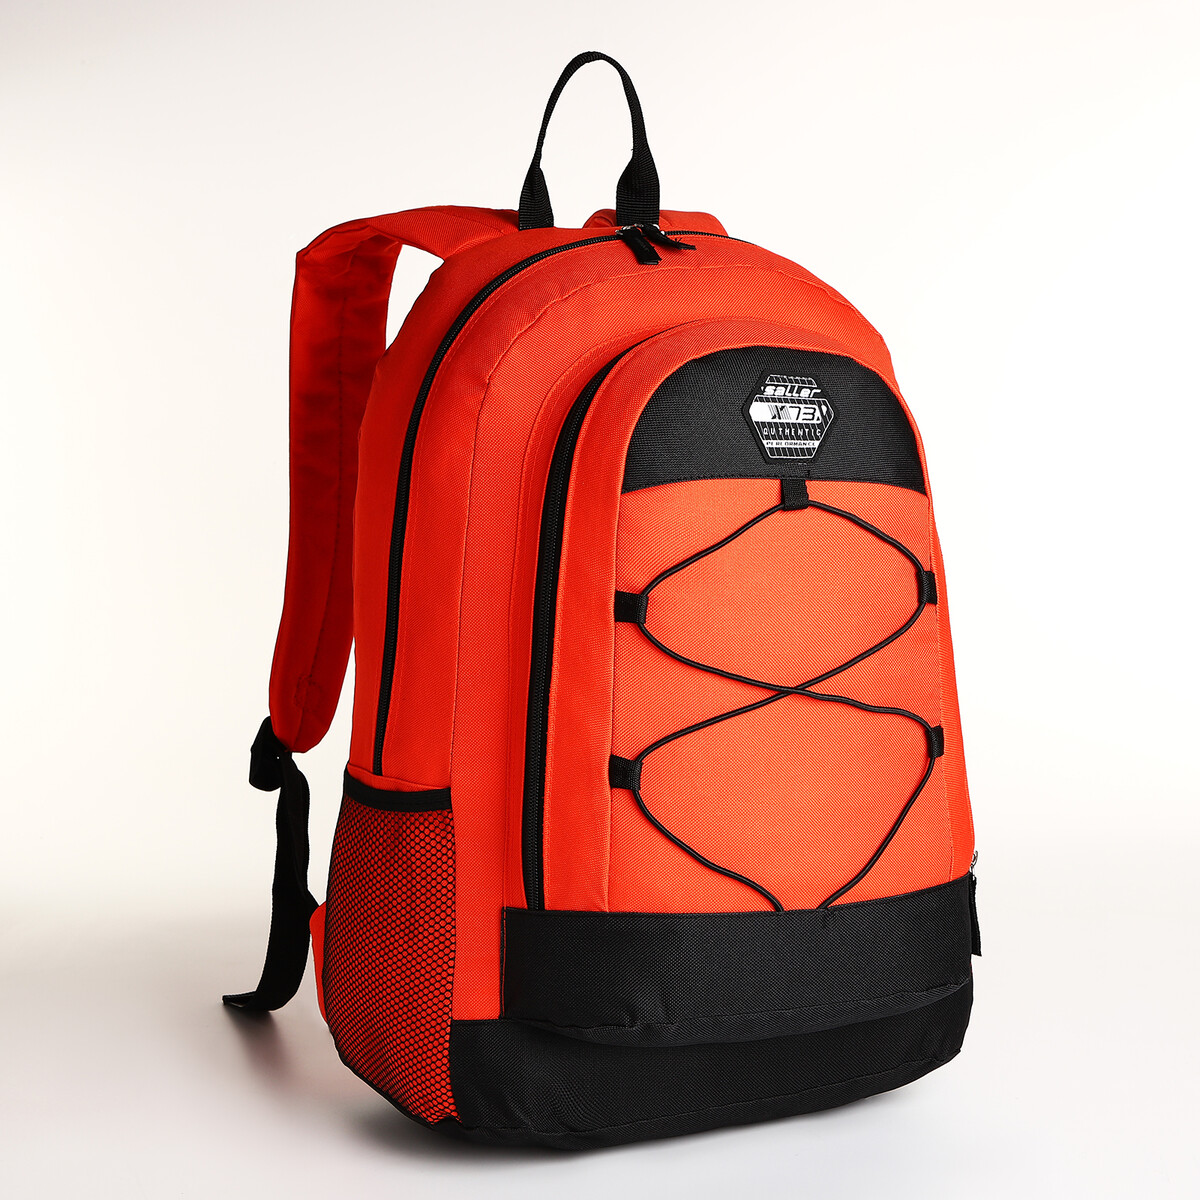 Рюкзак молодежный на молнии, 3 кармана, цвет оранжевый pixel bag рюкзак с led дисплеем pixel plus orange оранжевый